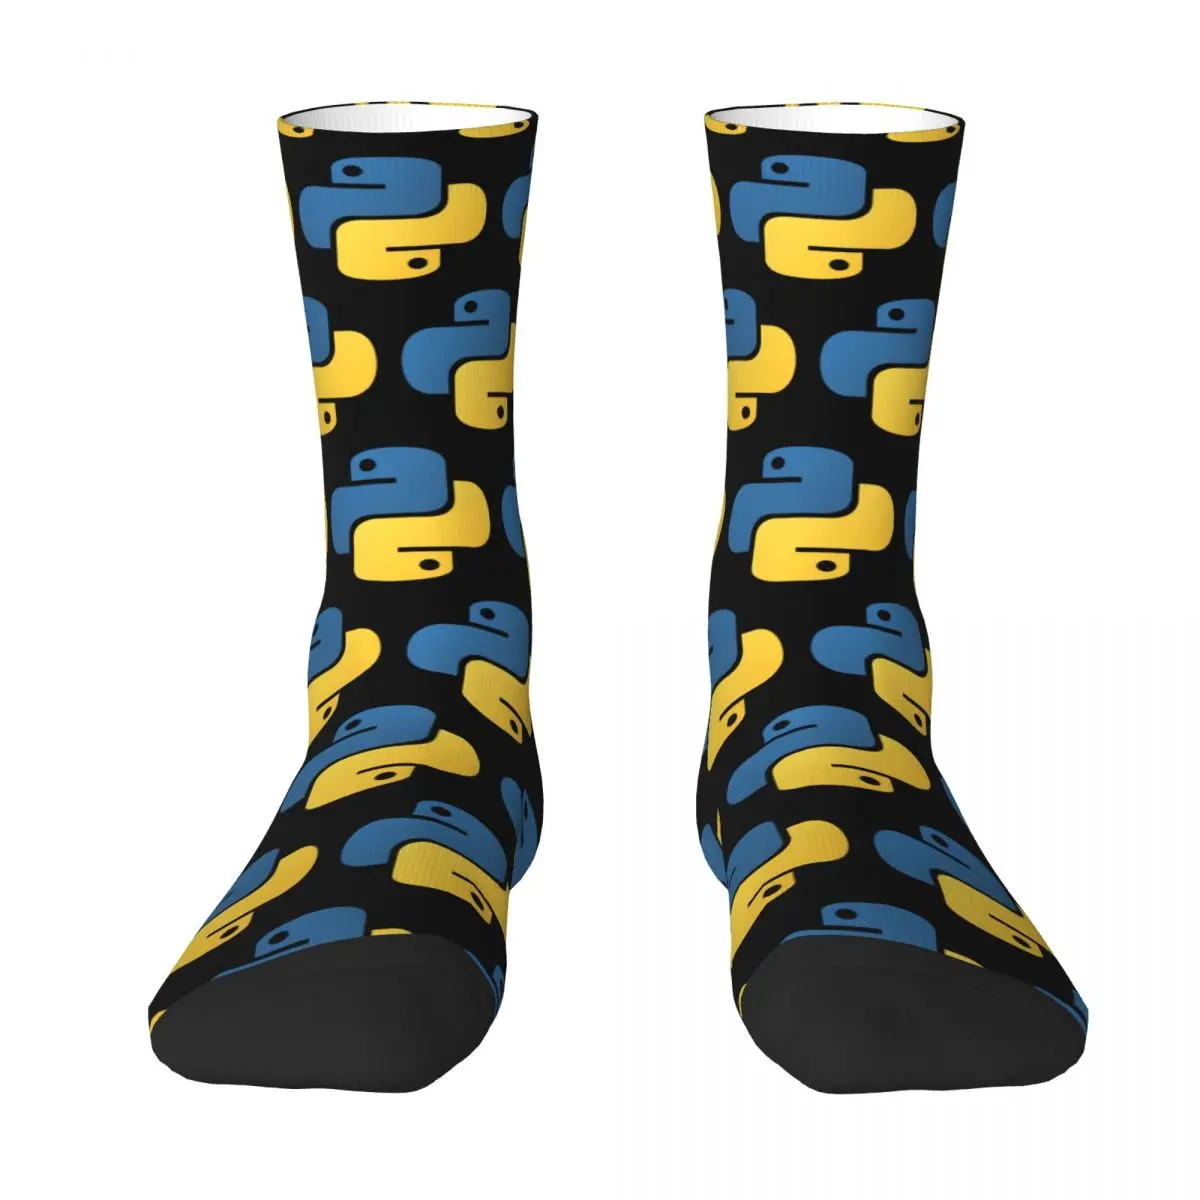 Python Programming Adult Socks,Unisex socks,men Socks women Socks